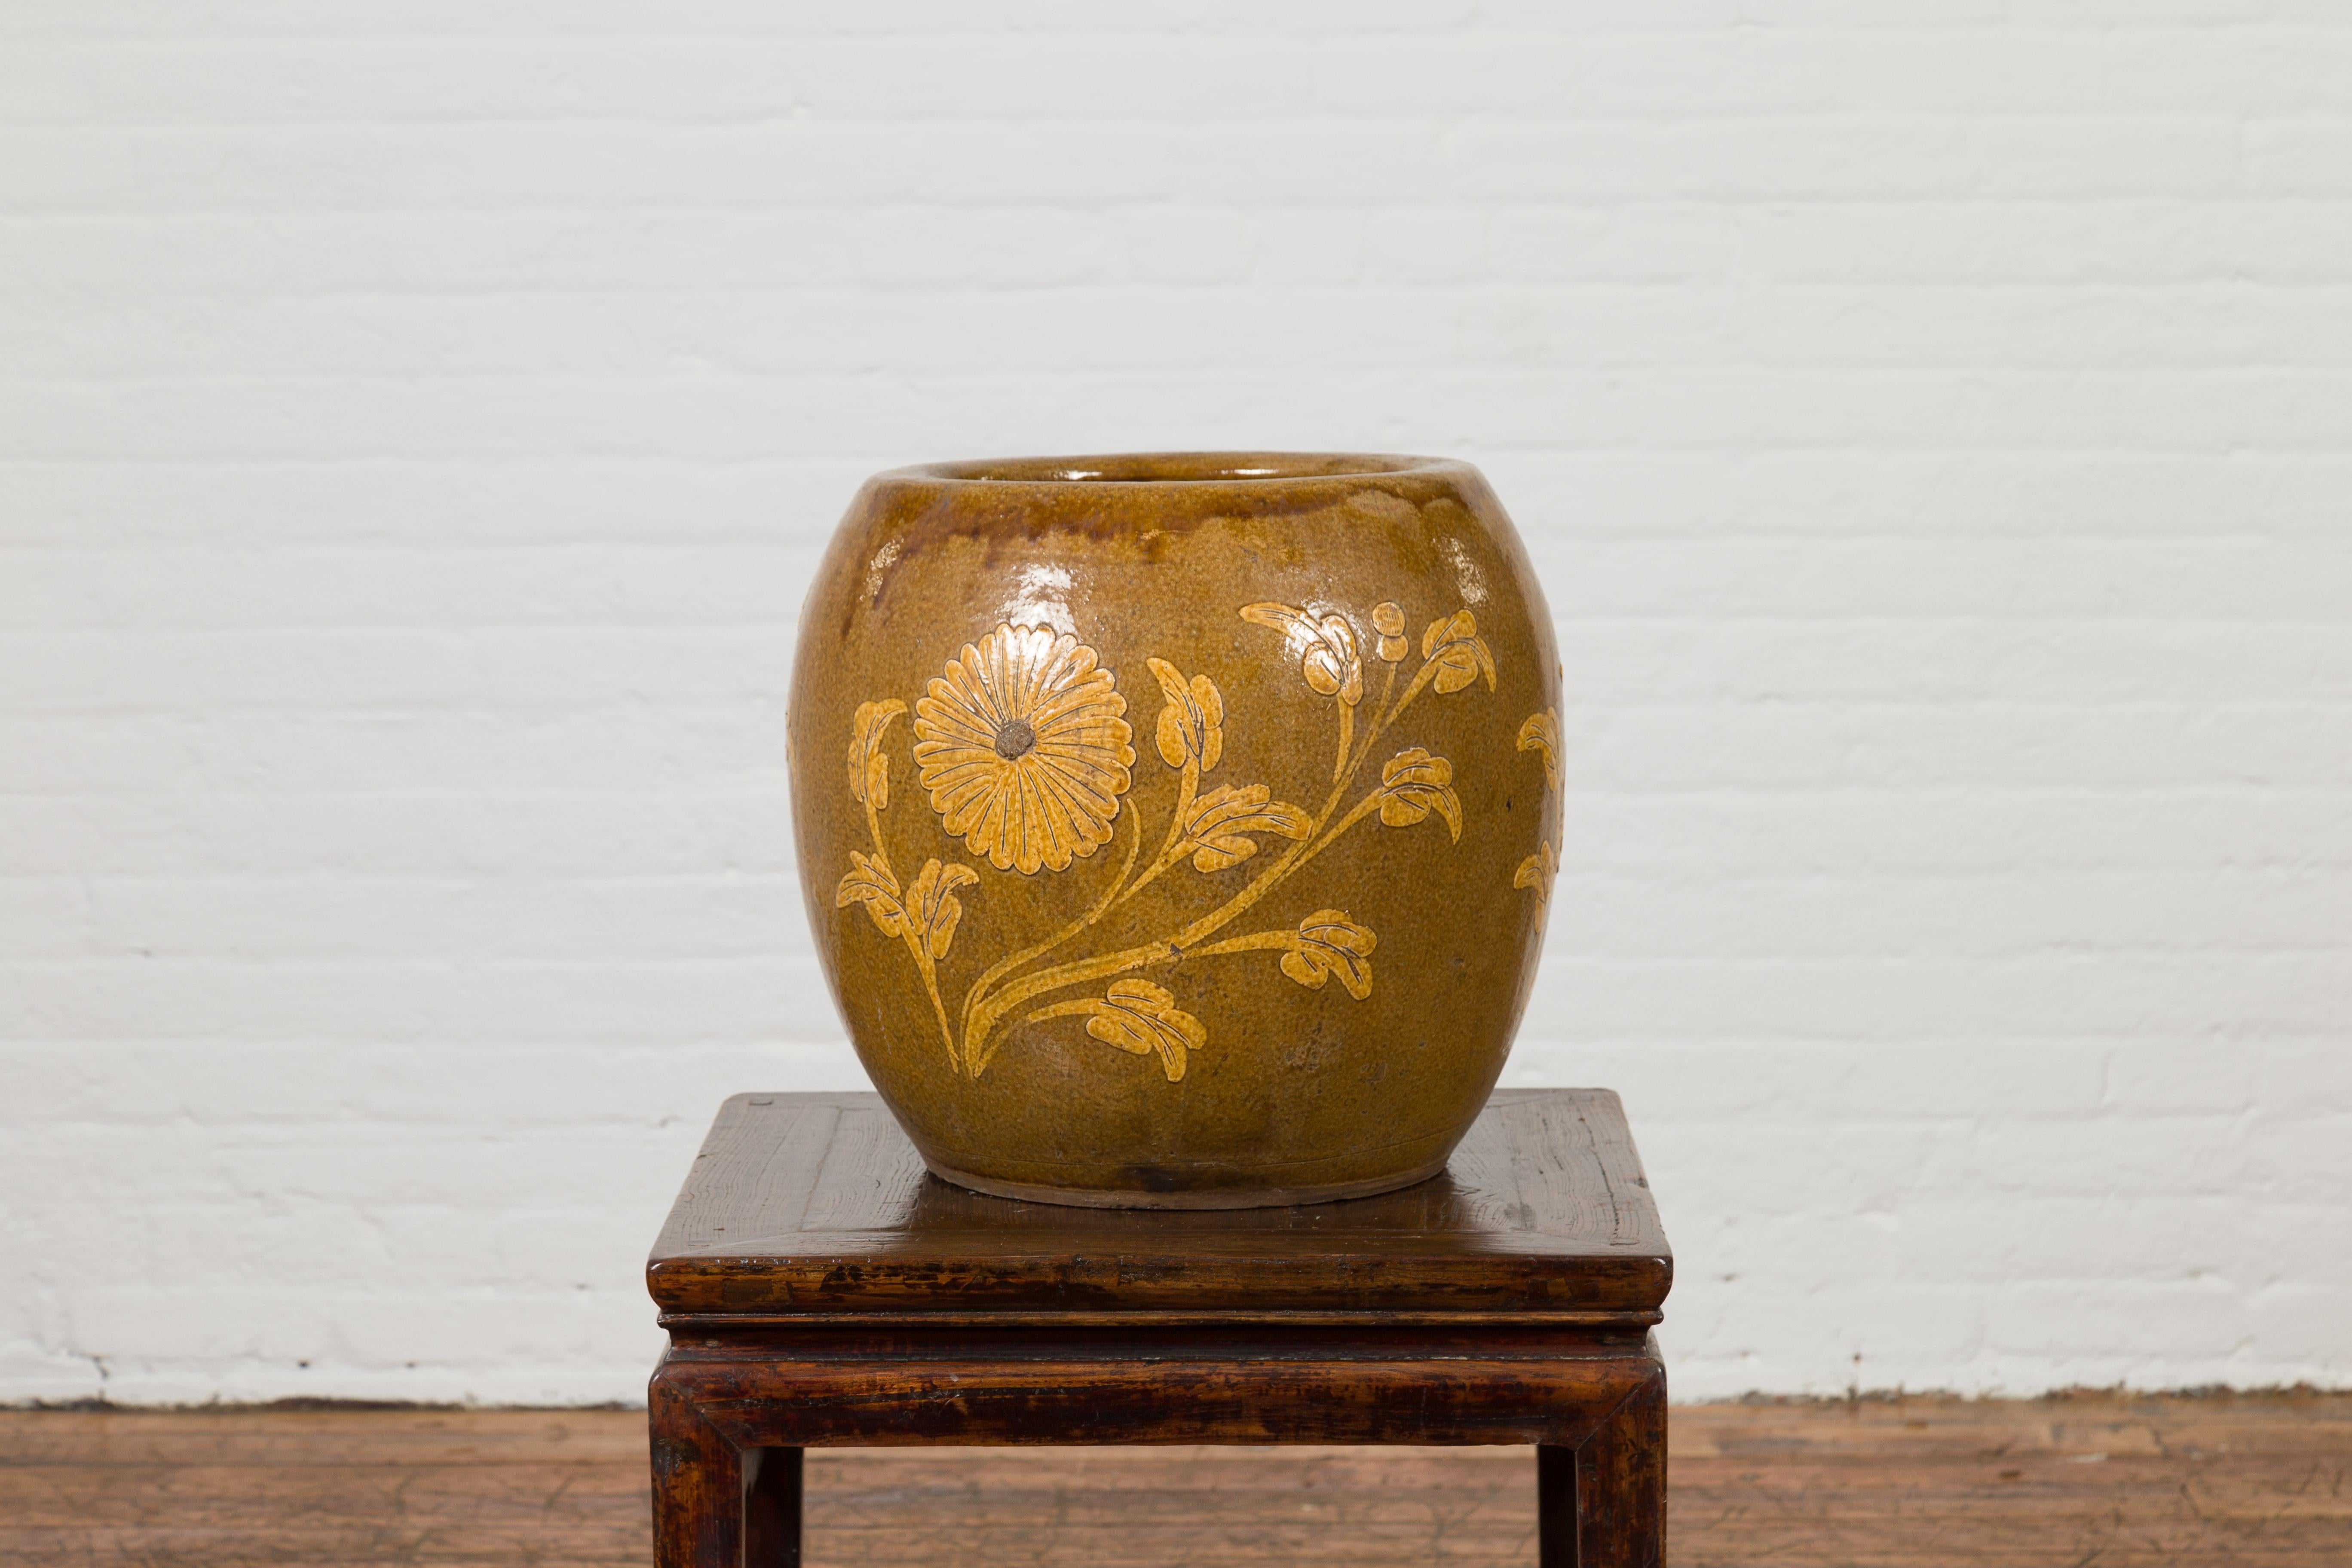 Antique Thai Glazed Ceramic Brown Round Planter with Golden Floral Motifs 1